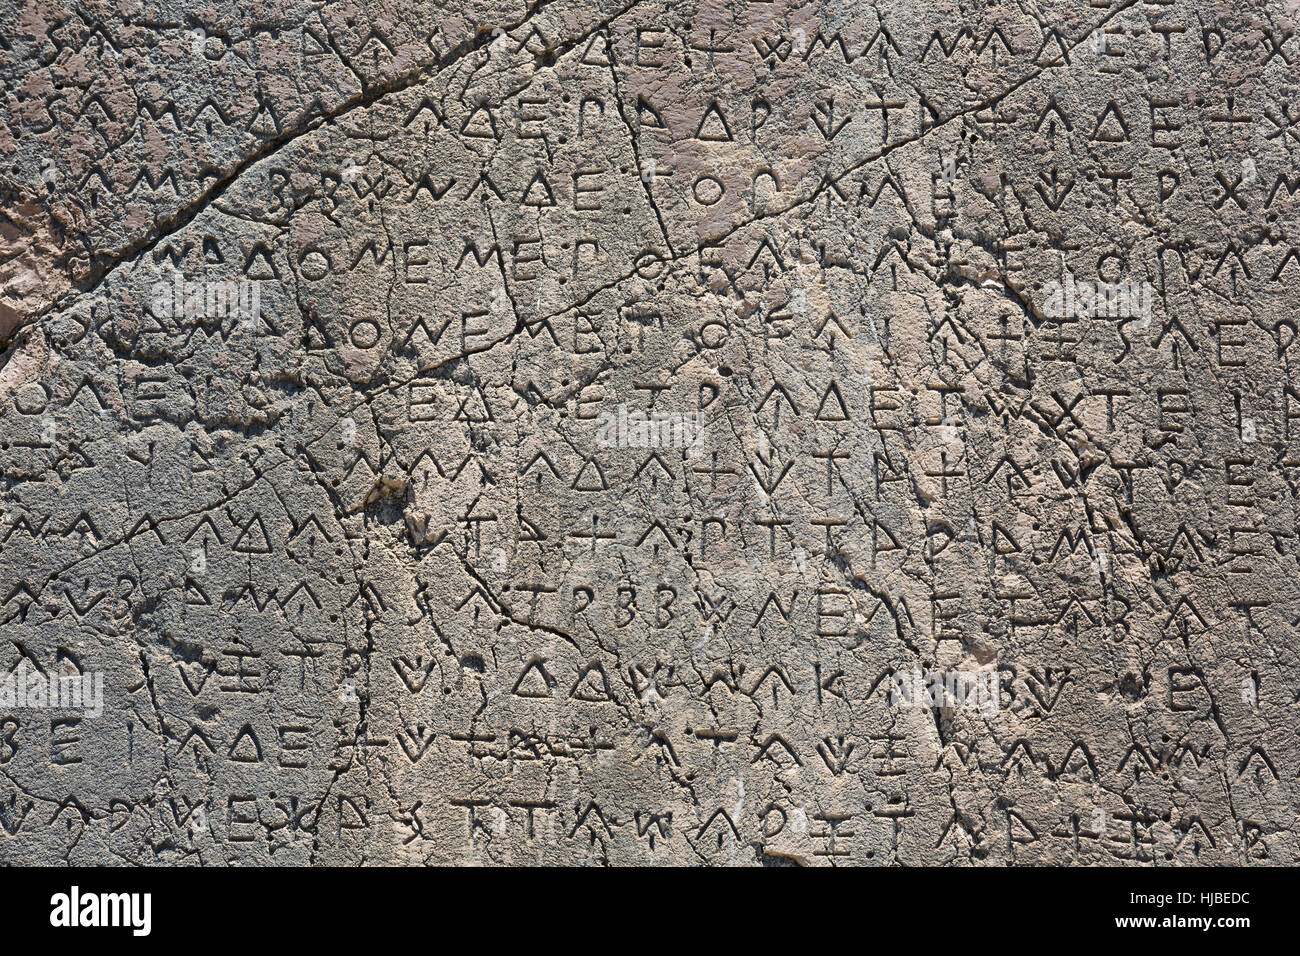 Makro-Ansicht des Skripts auf eingeschrieben Säule in Xanthos Ancient City, Antalya, Türkei Stockfoto